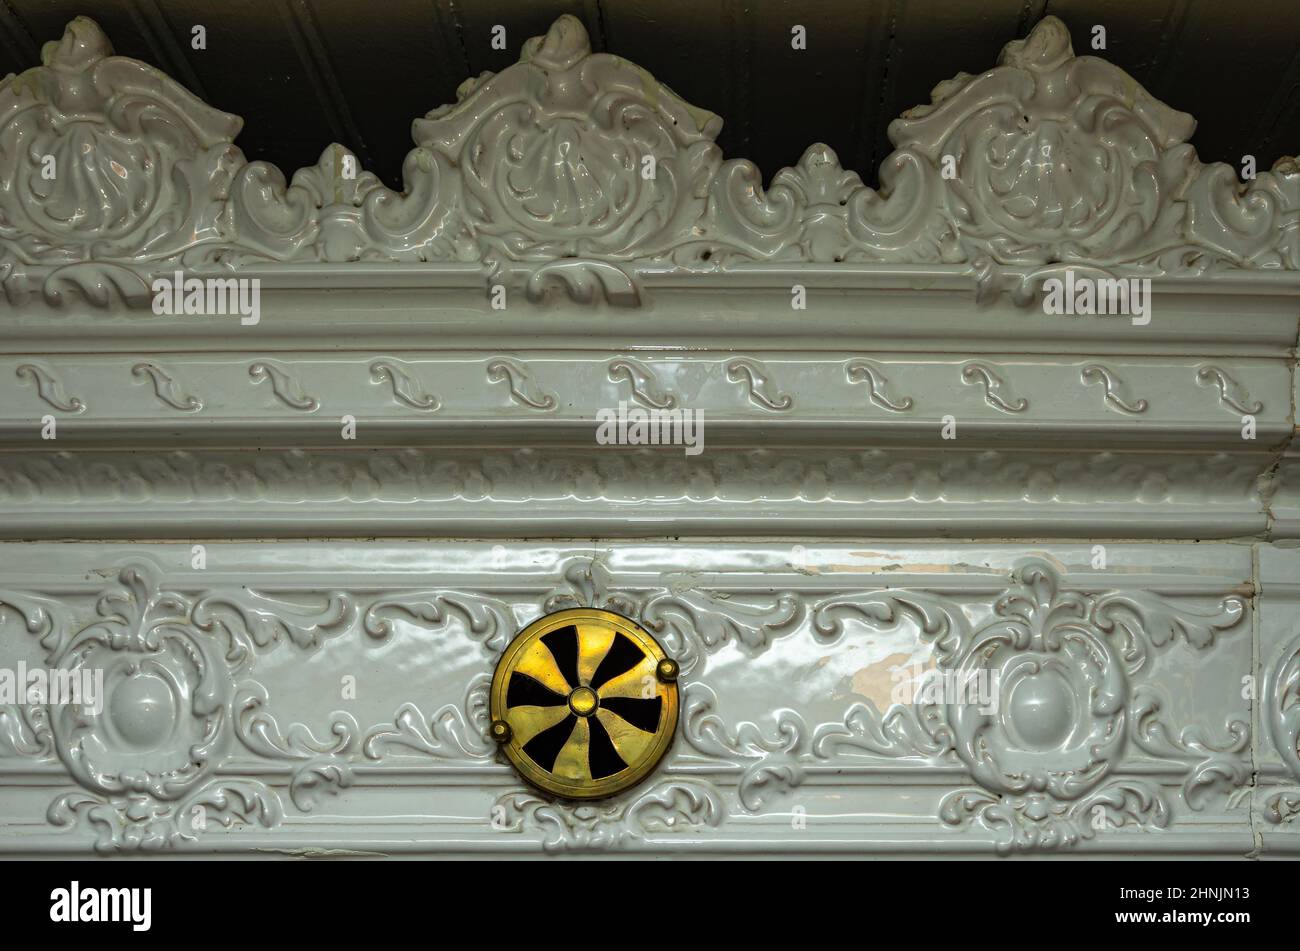 Particolare del bordo superiore di una stufa in maiolica di design barocco-classicista con regolatore di ventilazione. Foto Stock